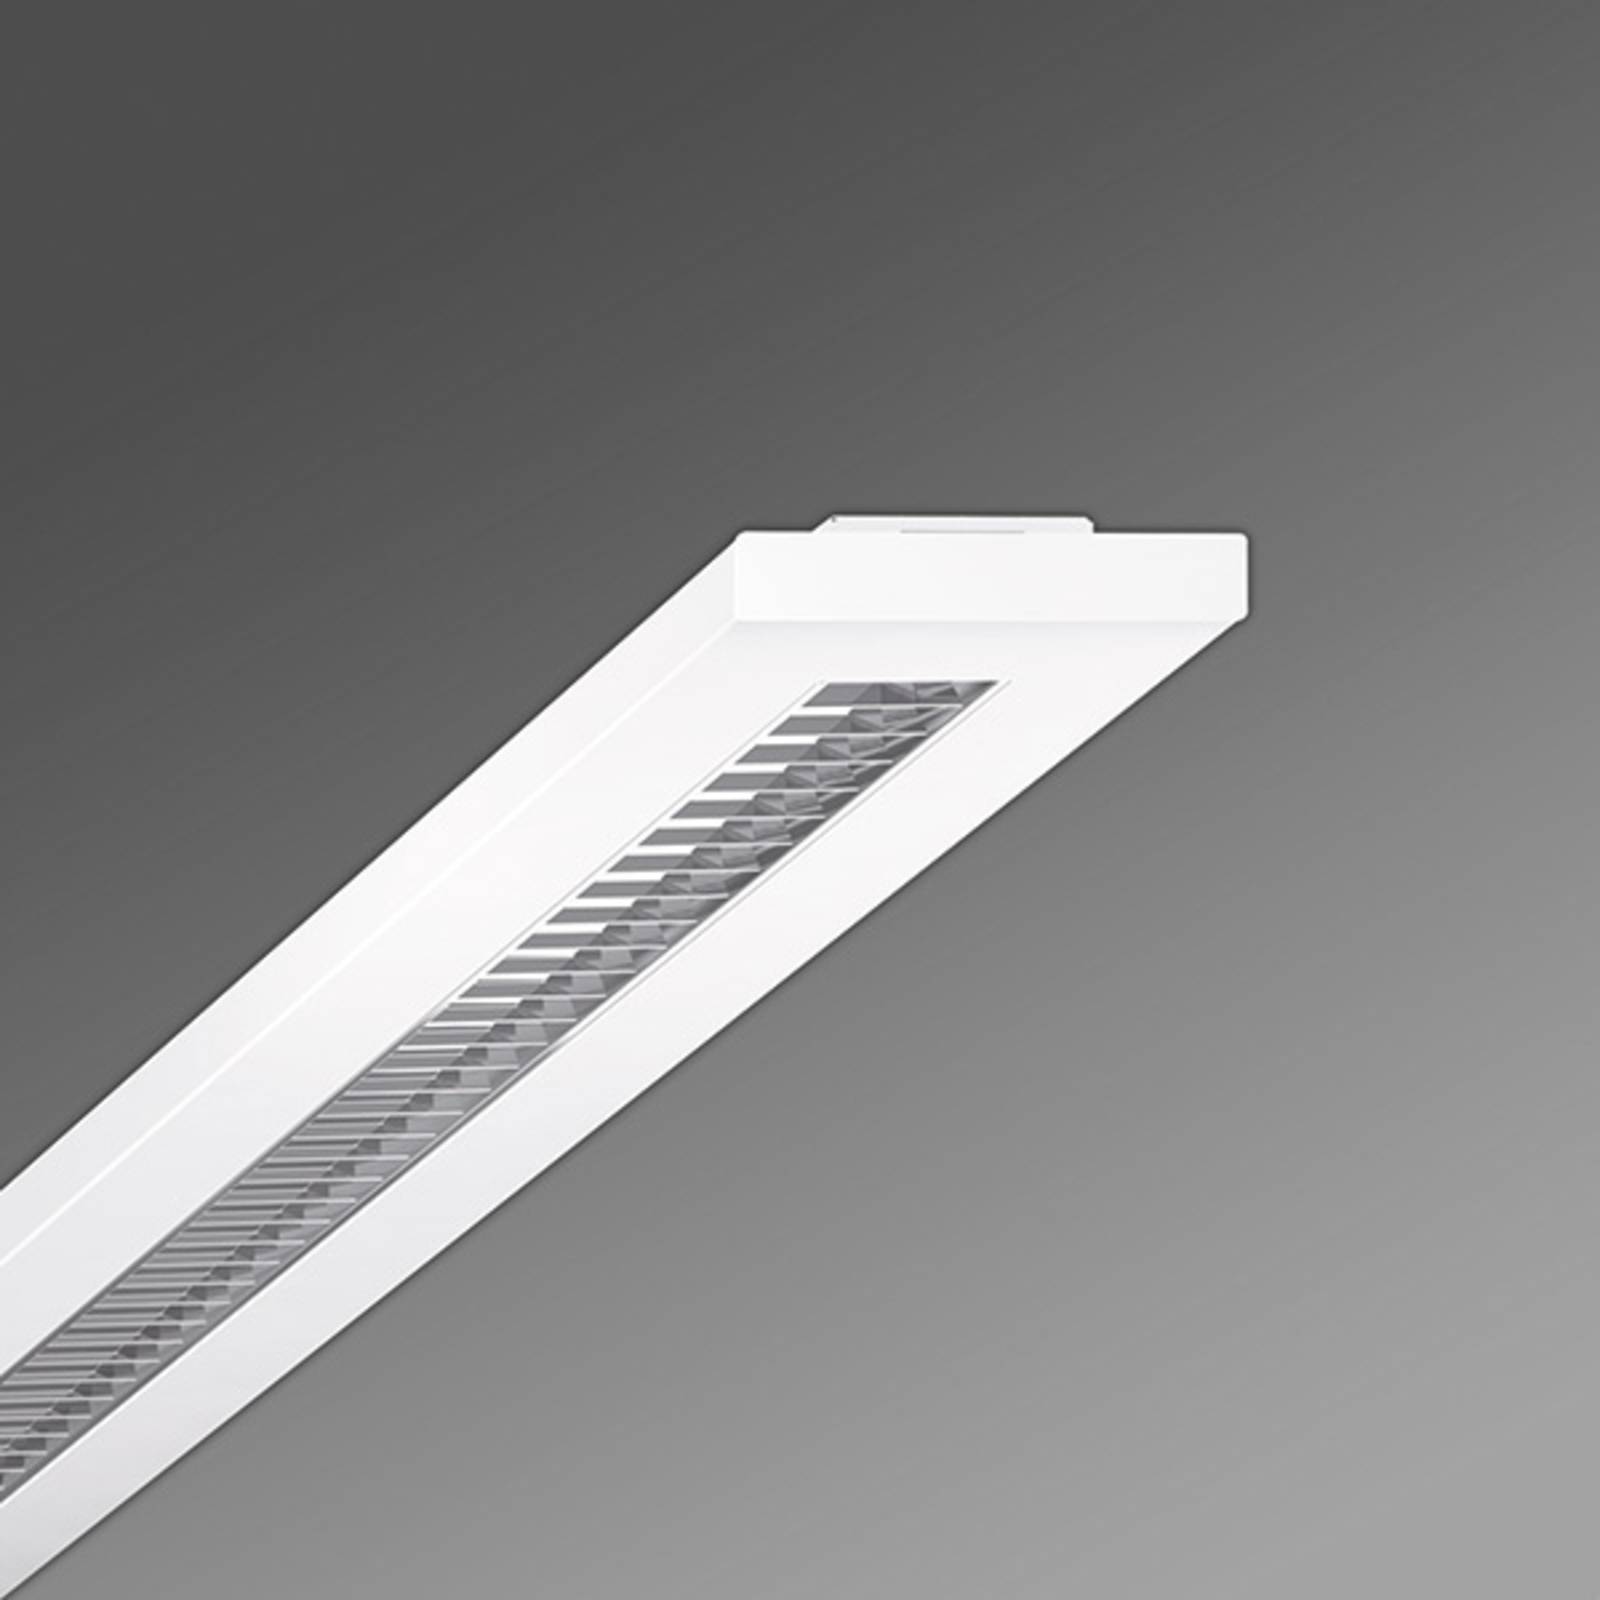 LED-Rasterleuchte Stail SAX Parabolraster 1200-1 von Regiolux